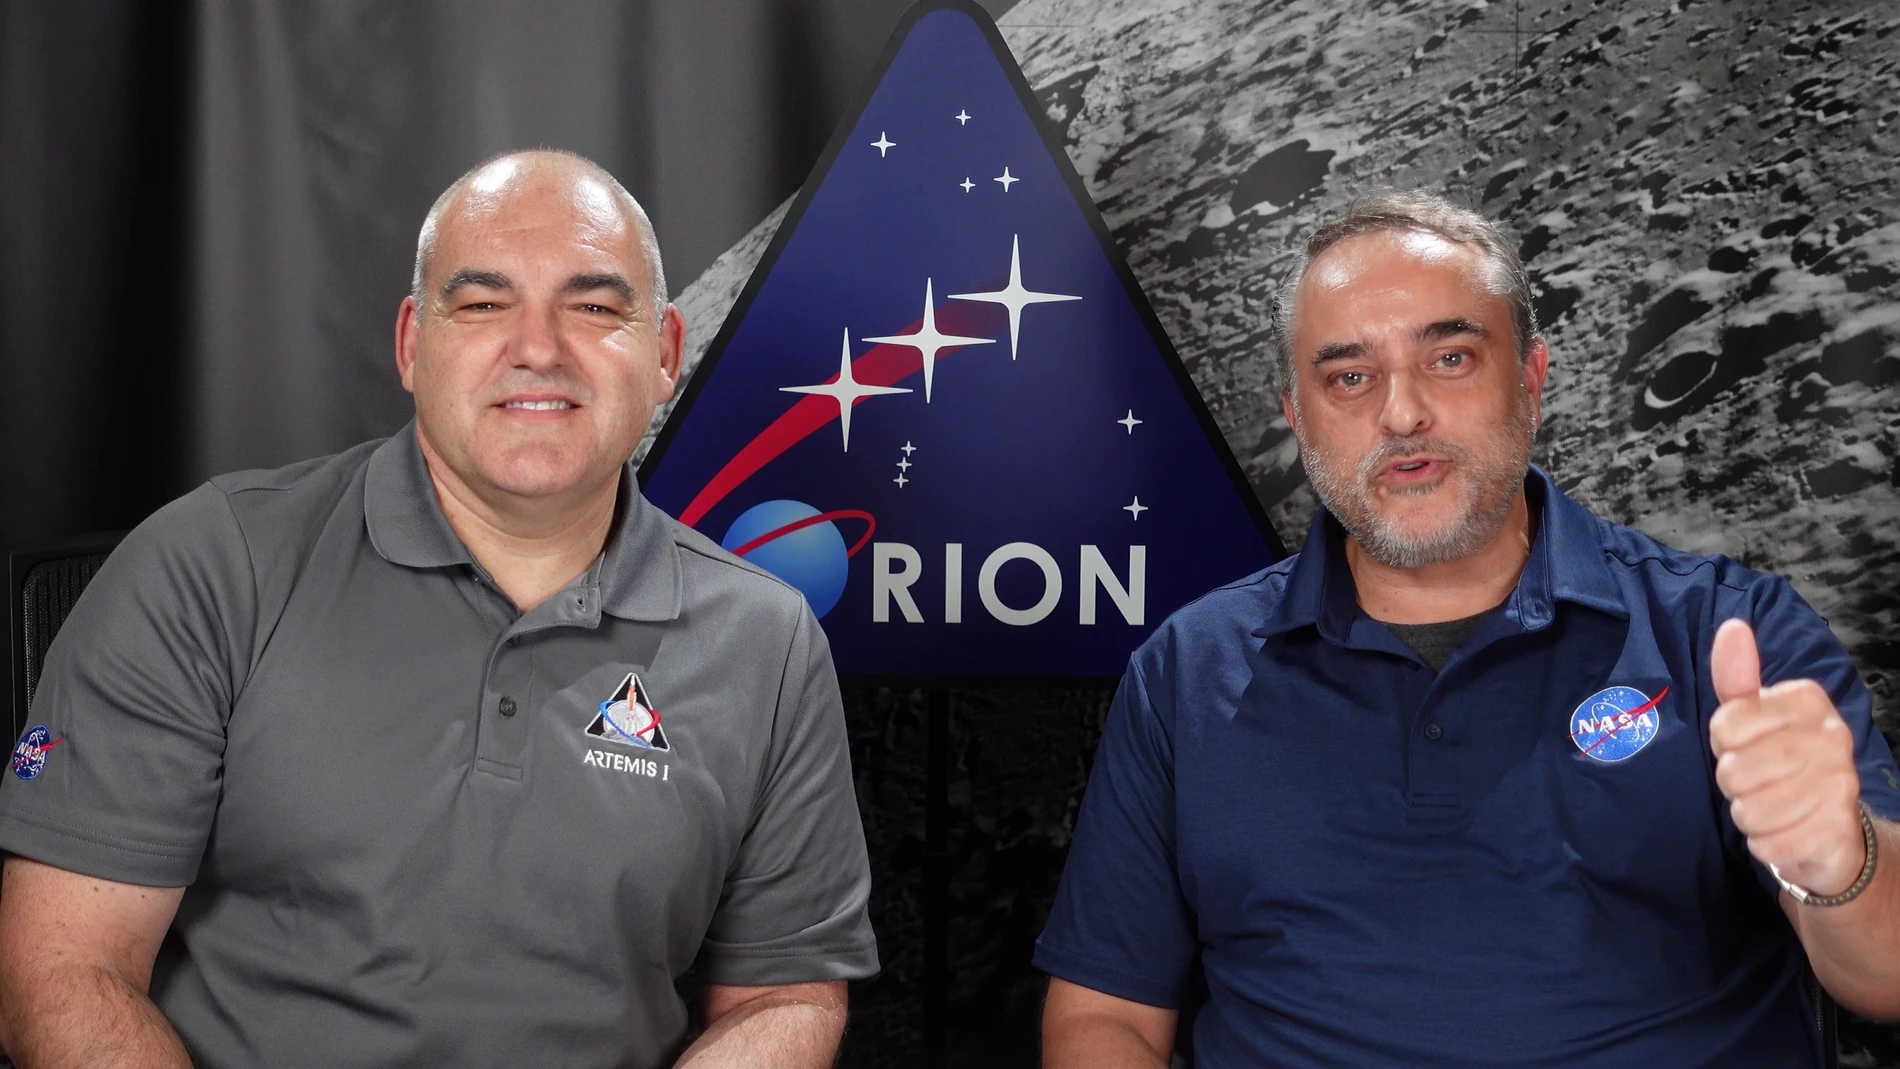 Los ingenieros de la NASA Eduardo García Llama y Carlos García-Galán en su vídeo al colegio Nuestra Señora del Carmen. EDUARDO GARCÍA LLAMA/CARLOS GARCÍA